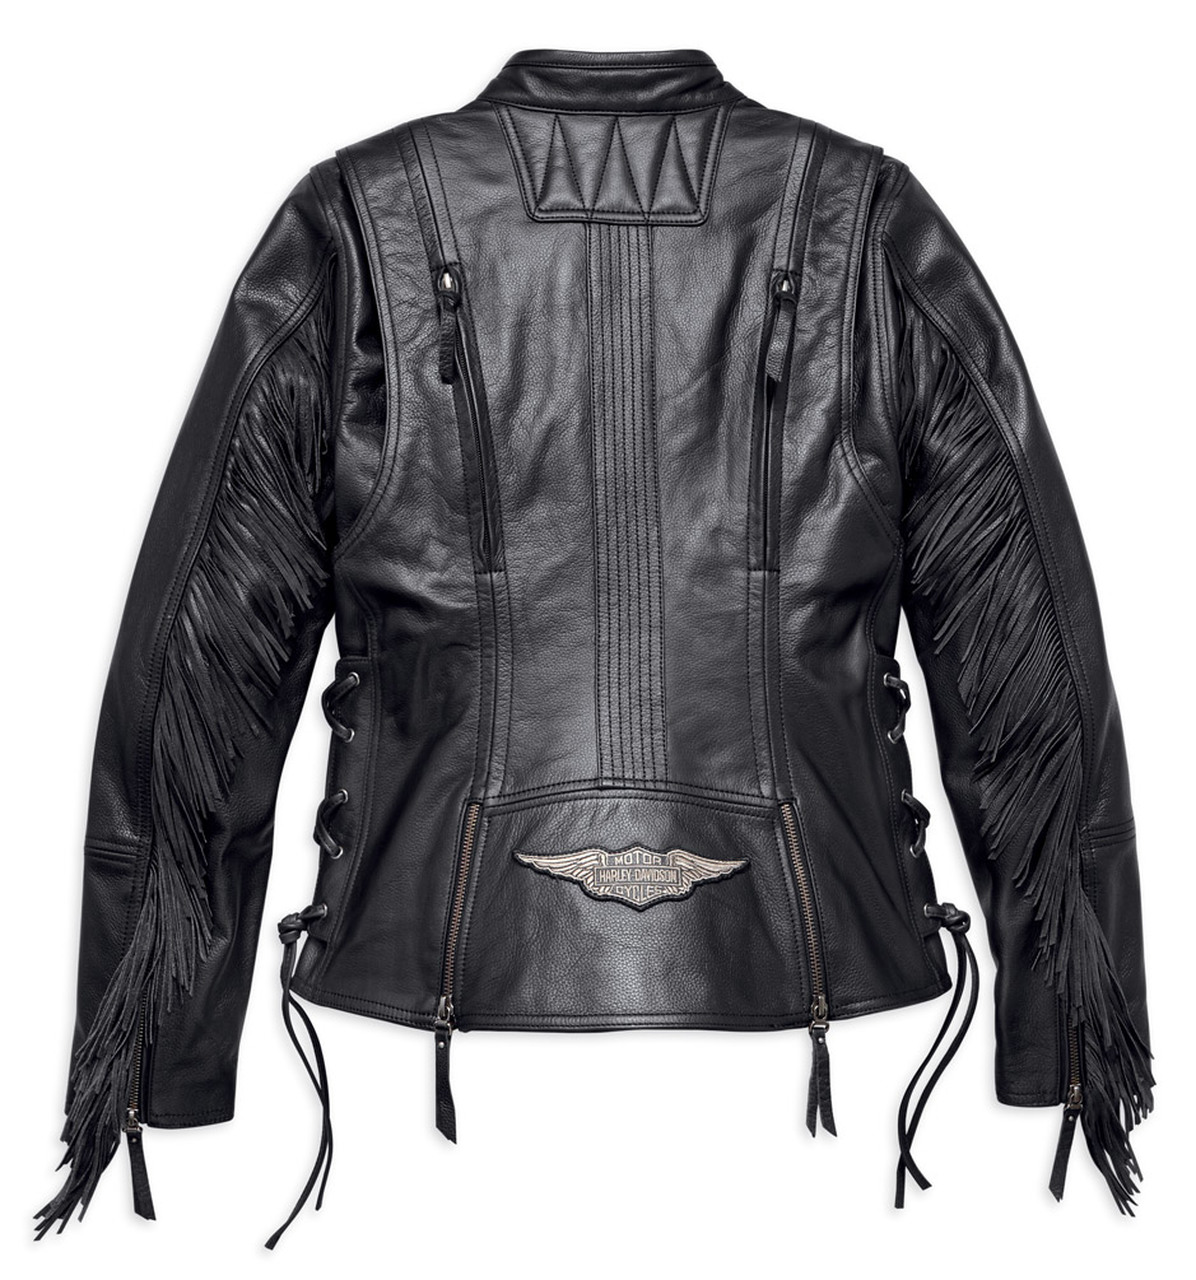 Harley Davidson Boone fringed leather jacket women’s, black